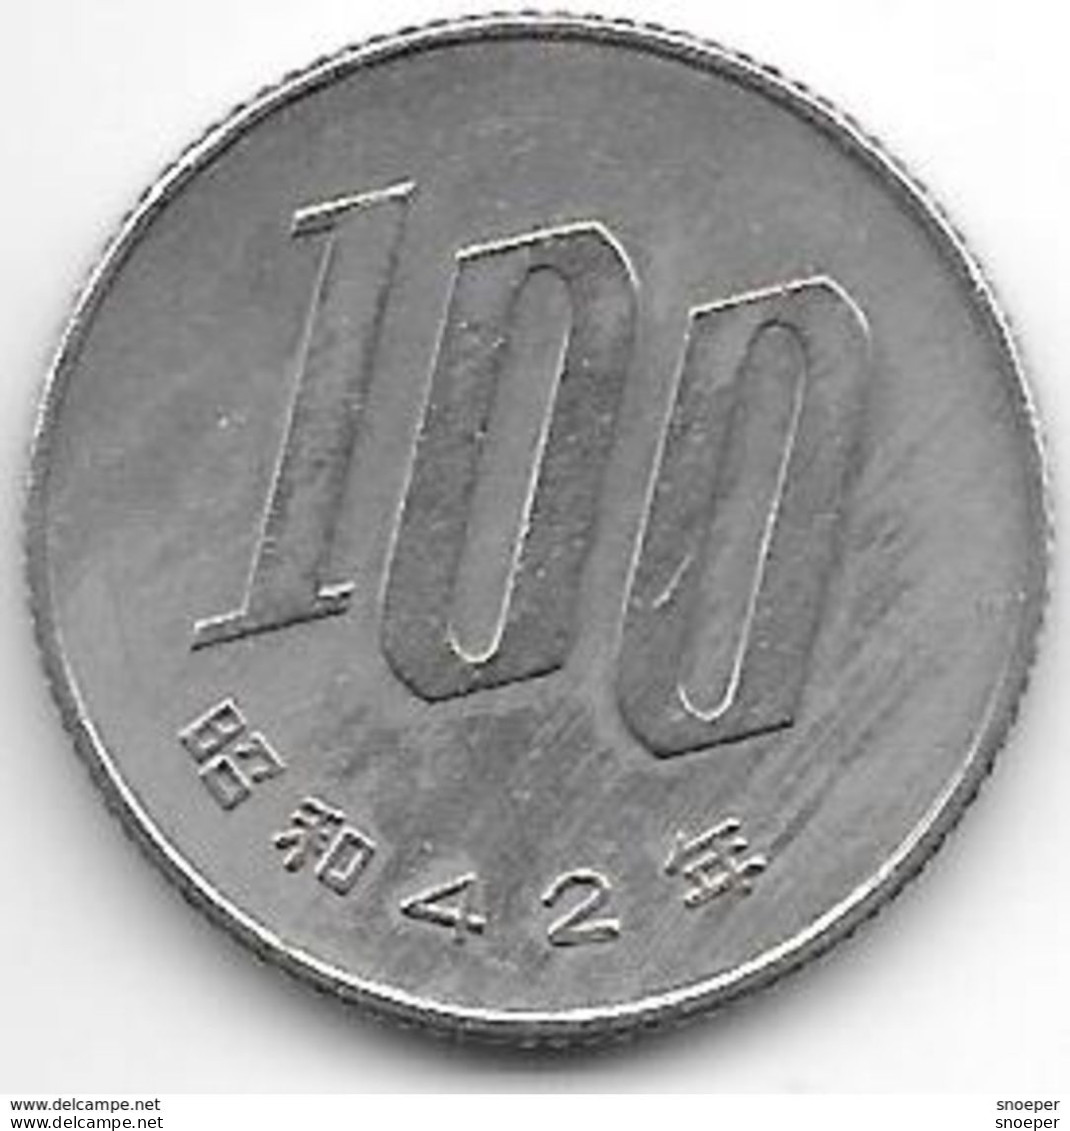 *japan 100 Yen  Year 42 = 1967  Km 82  Xf - Japon